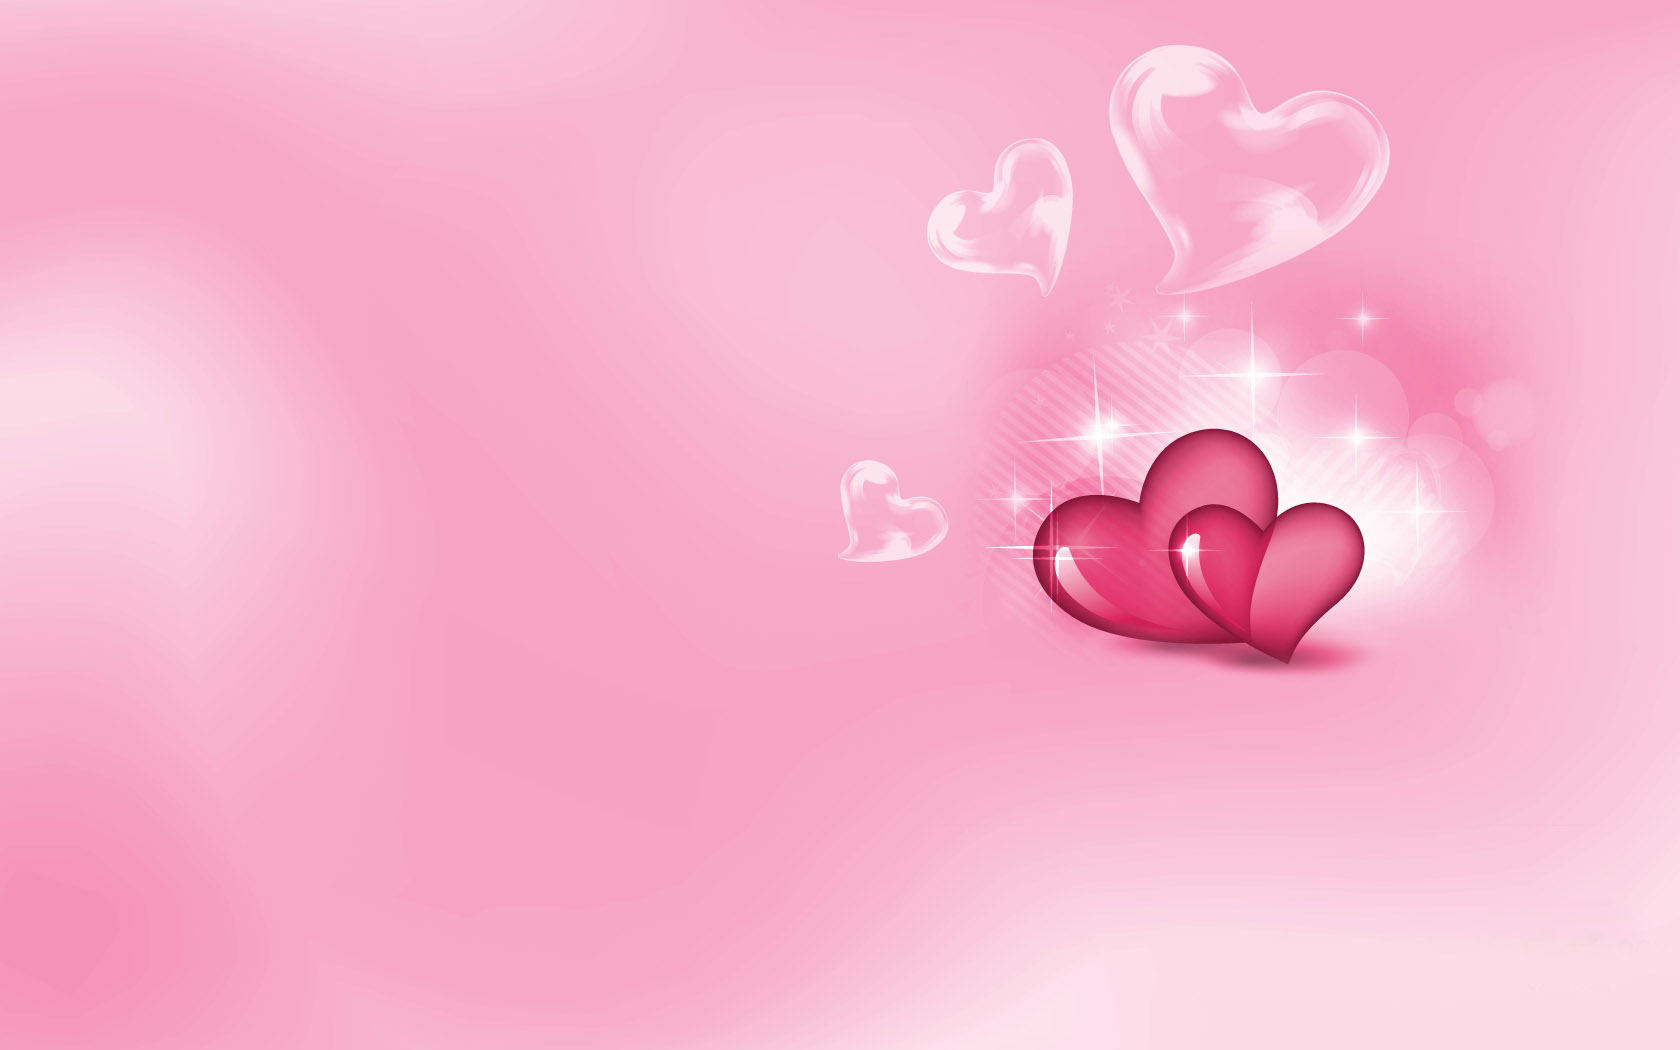 创意设计爱心玫瑰图片 爱心与玫瑰桌面壁纸(4)